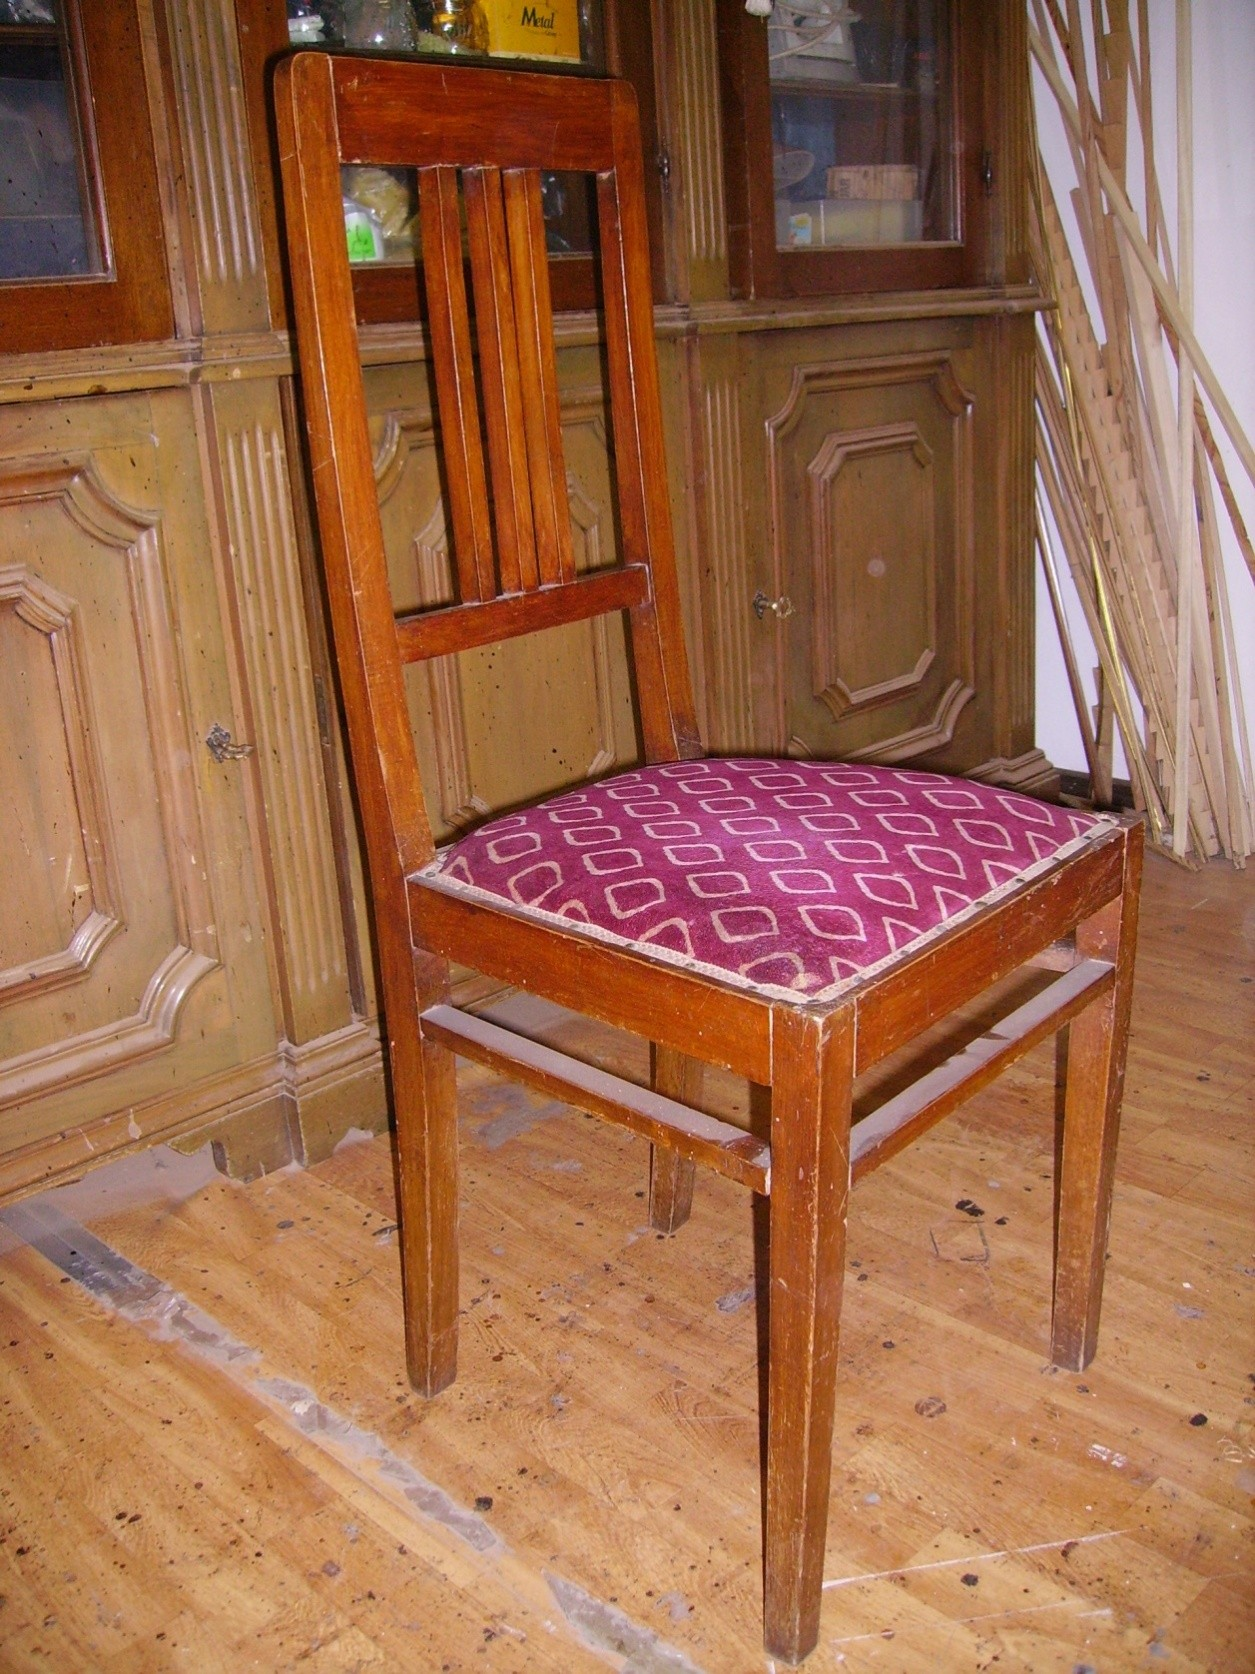 Questa sedia fa parte di un gruppo di 4 sedute di una sala da pranzo dei primi anni del 900, si tratta del tipico mobile prodotto in quell epoca ancora artigianalmente ma già in piccole serie.